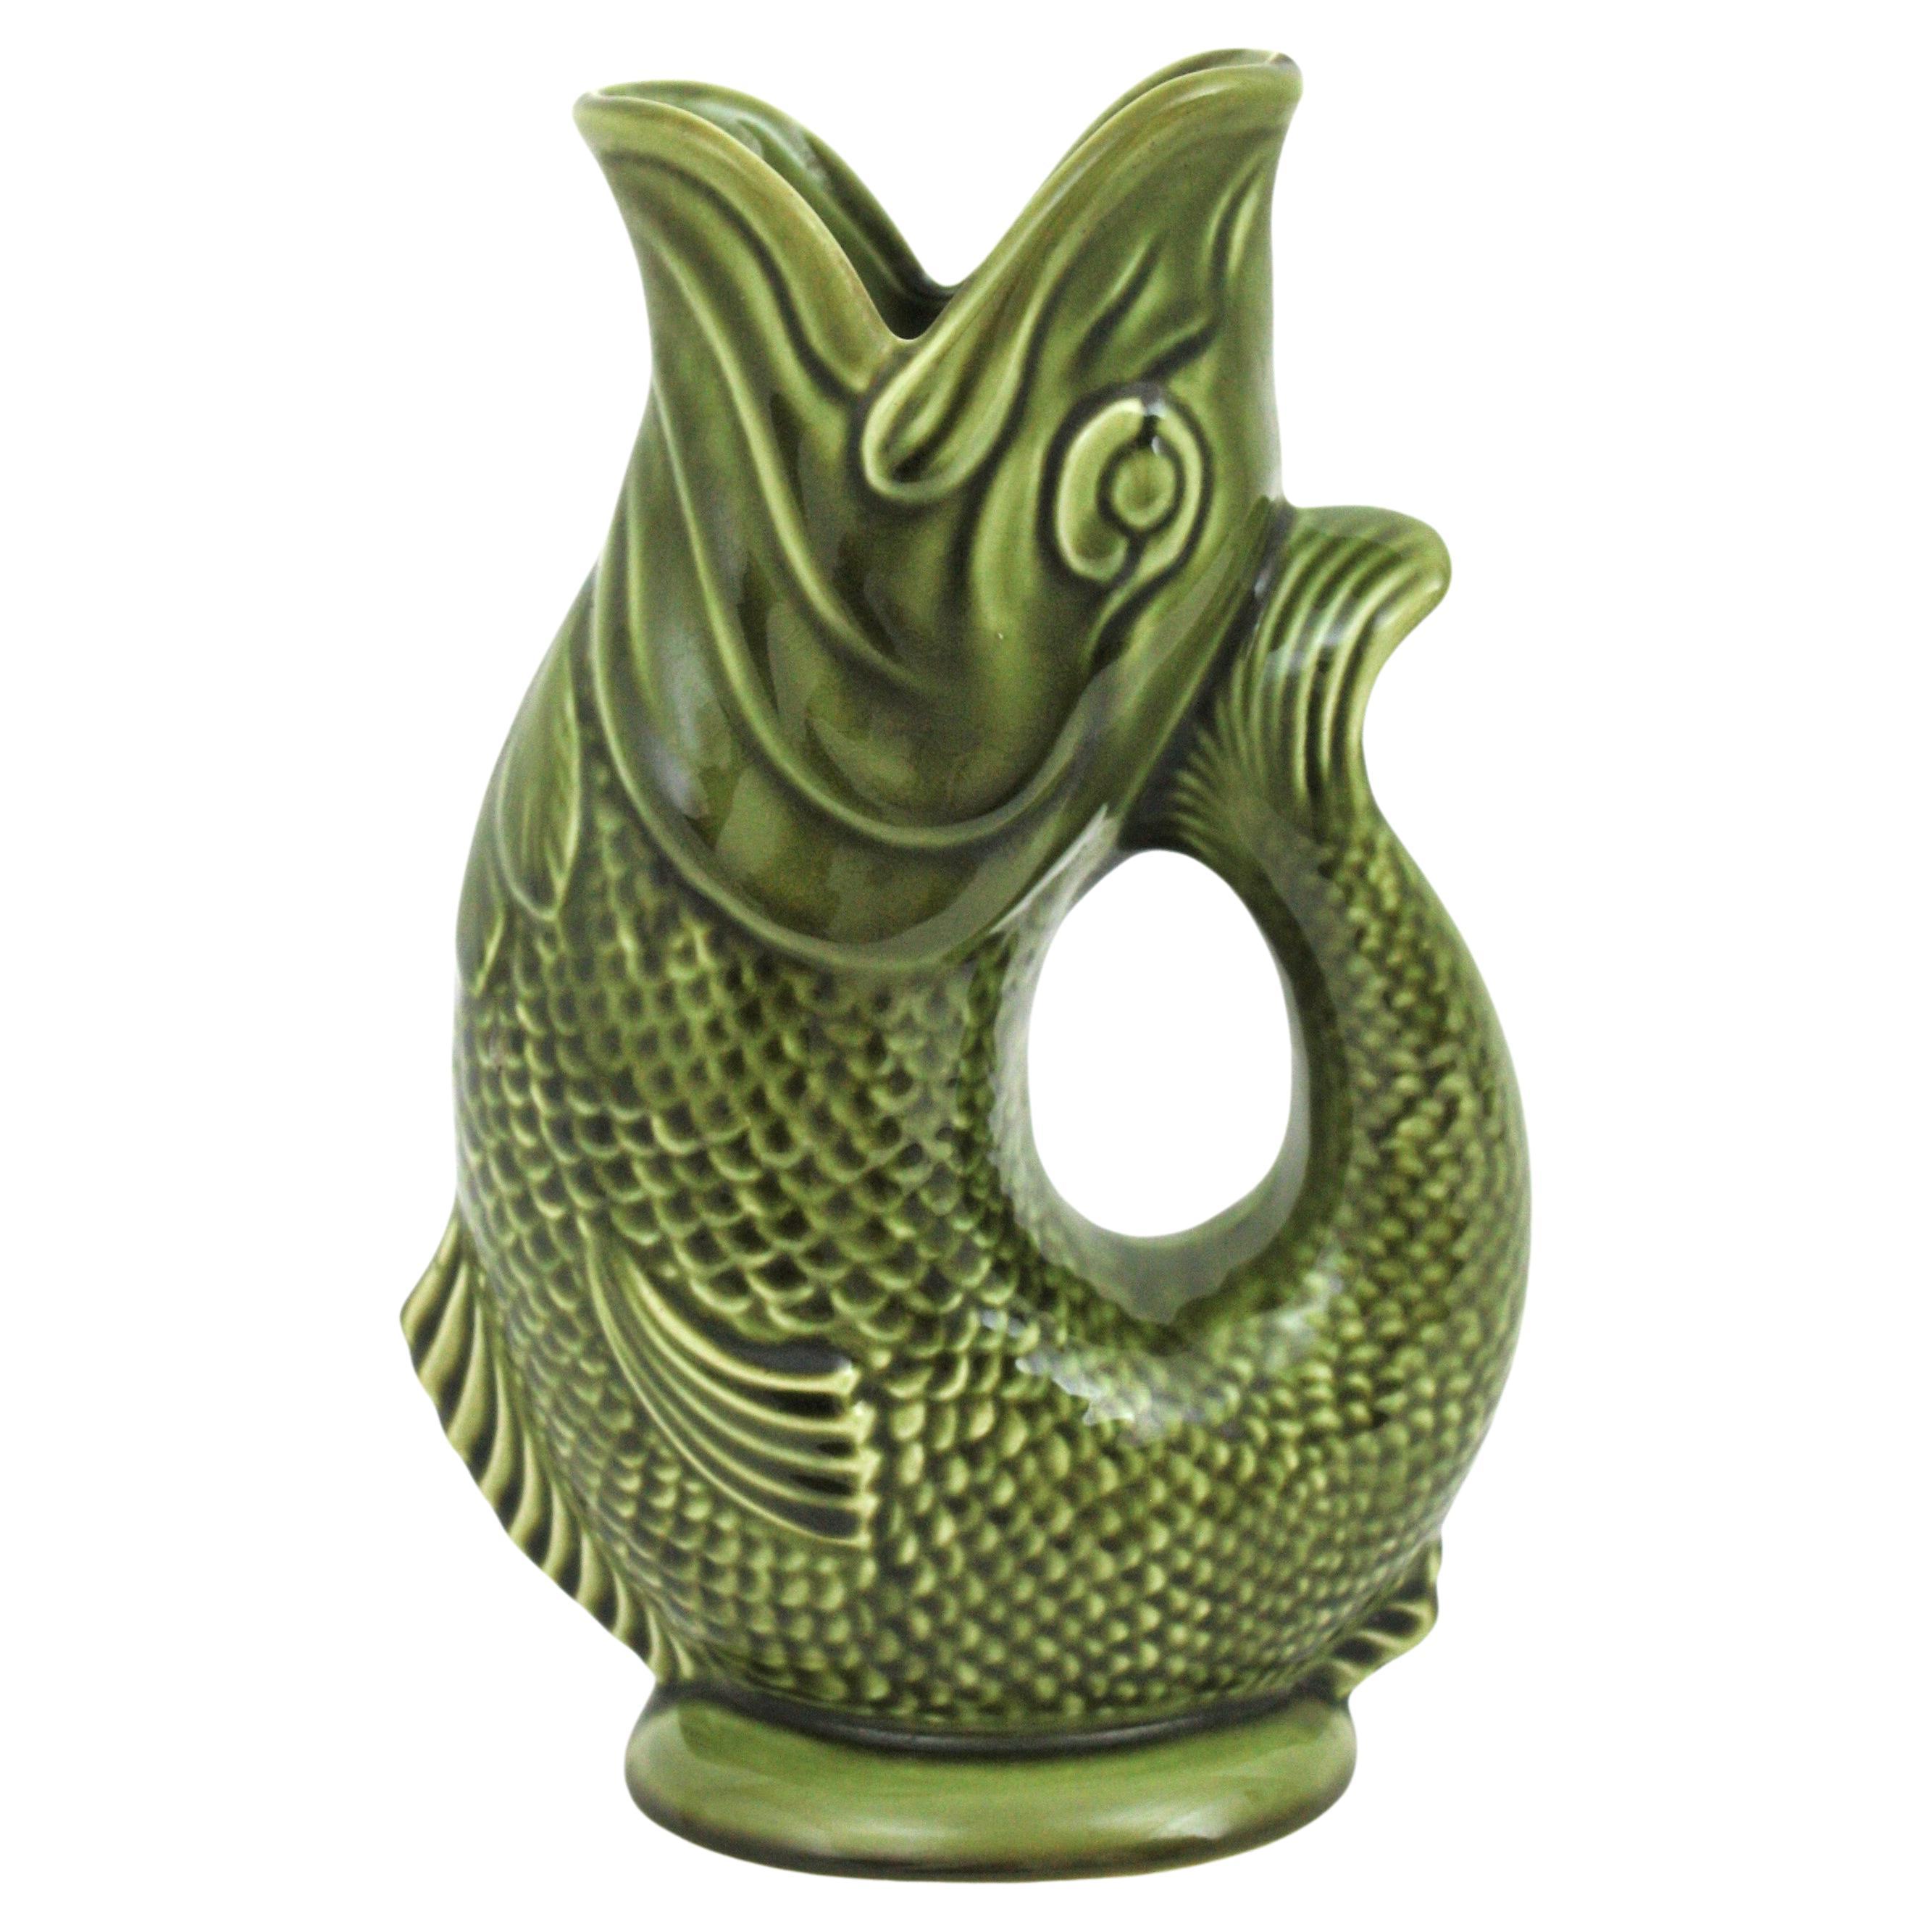 Übergroße Mid-Century Modernist glasierte Keramik gurgelnden Fisch Wasserkrug / Krug. England, 1950er-1960er Jahre
Hergestellt von Dartmouth Devon England.
Auffällige große grüne Majolika-Keramikvase, Fischkrug oder Krug.
Diese Fischkrugvase ist